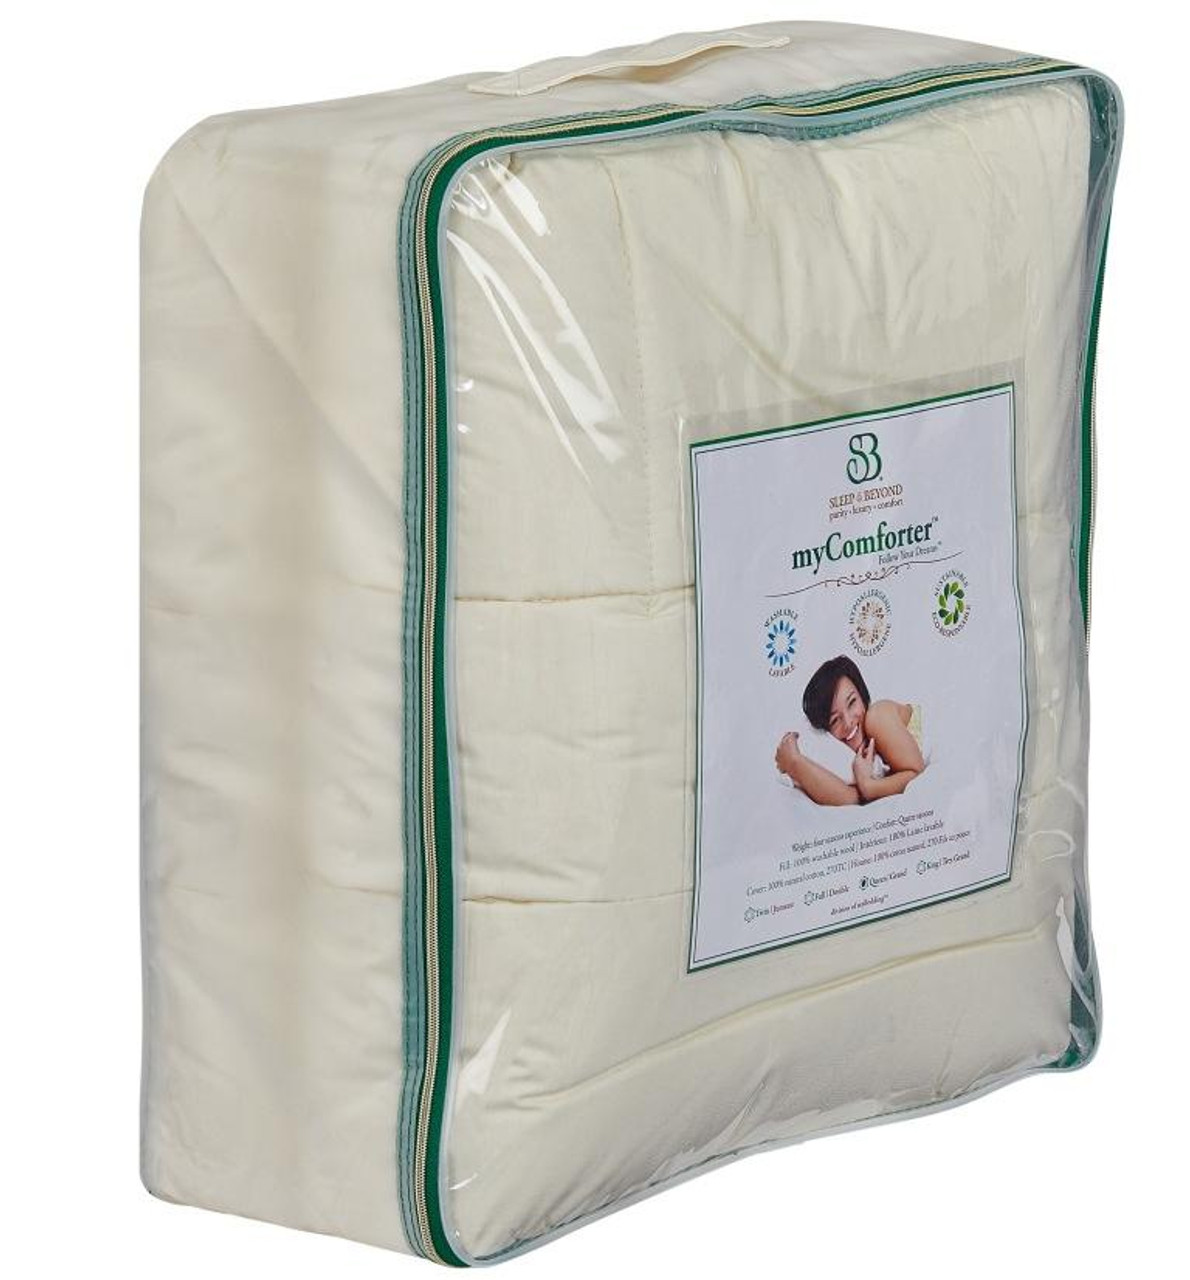 Sleep & Beyond myComforter™ 100% Washable Wool Comforter Front Package